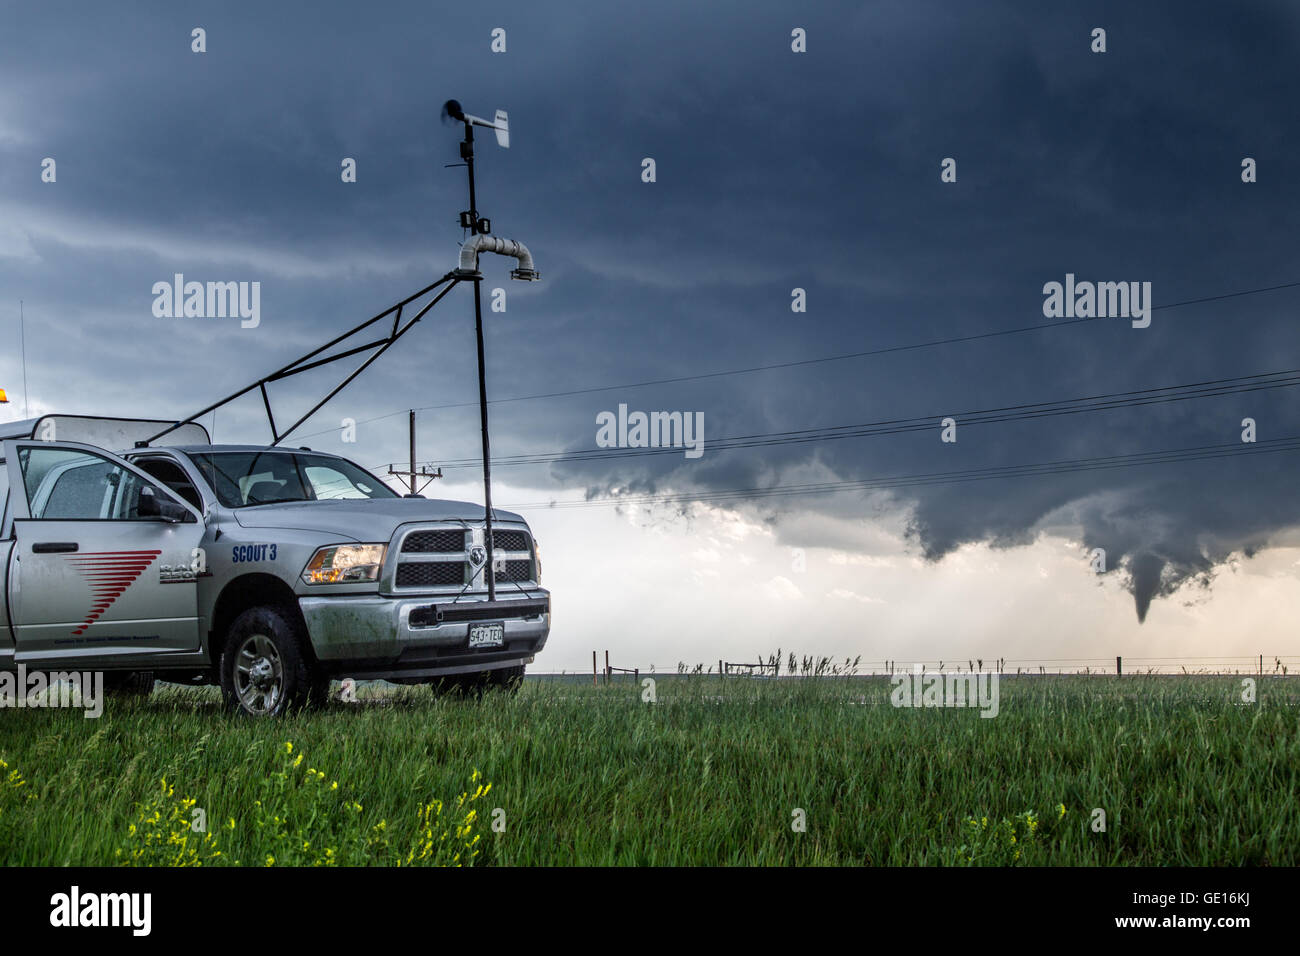 Un Storm Chaser science research carretilla con parques cwsr cerca de un tornado en desarrollo cerca de Dodge City, Kansas, 24 de mayo de 2016. Foto de stock